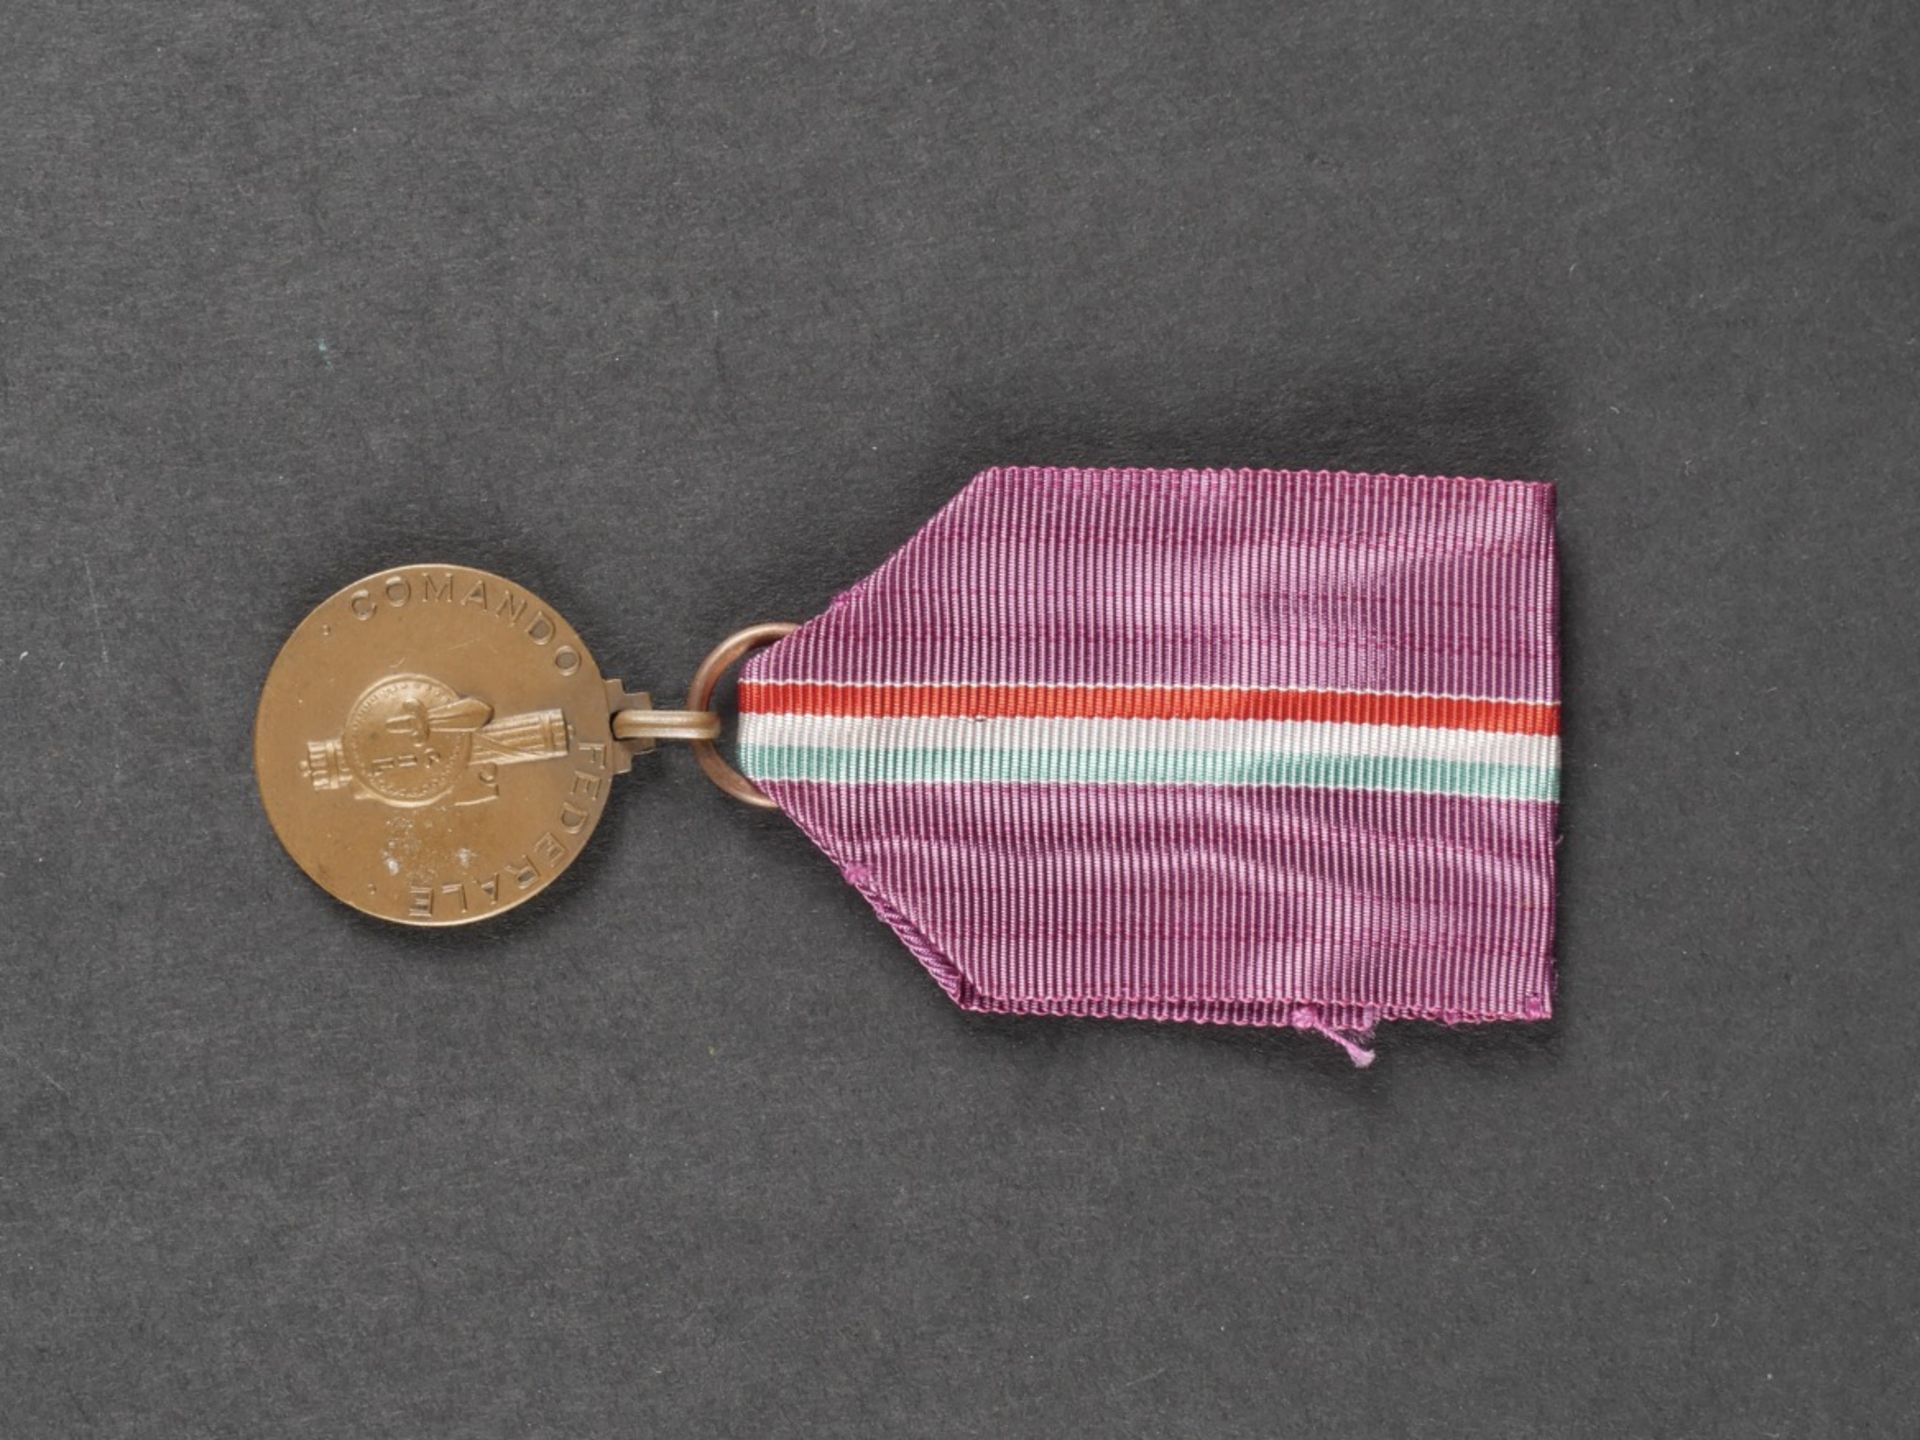 Glaive de recompense pour le 100 metres dos des championnats sportifs de la jeunesse dEurope en 194 - Image 18 of 19